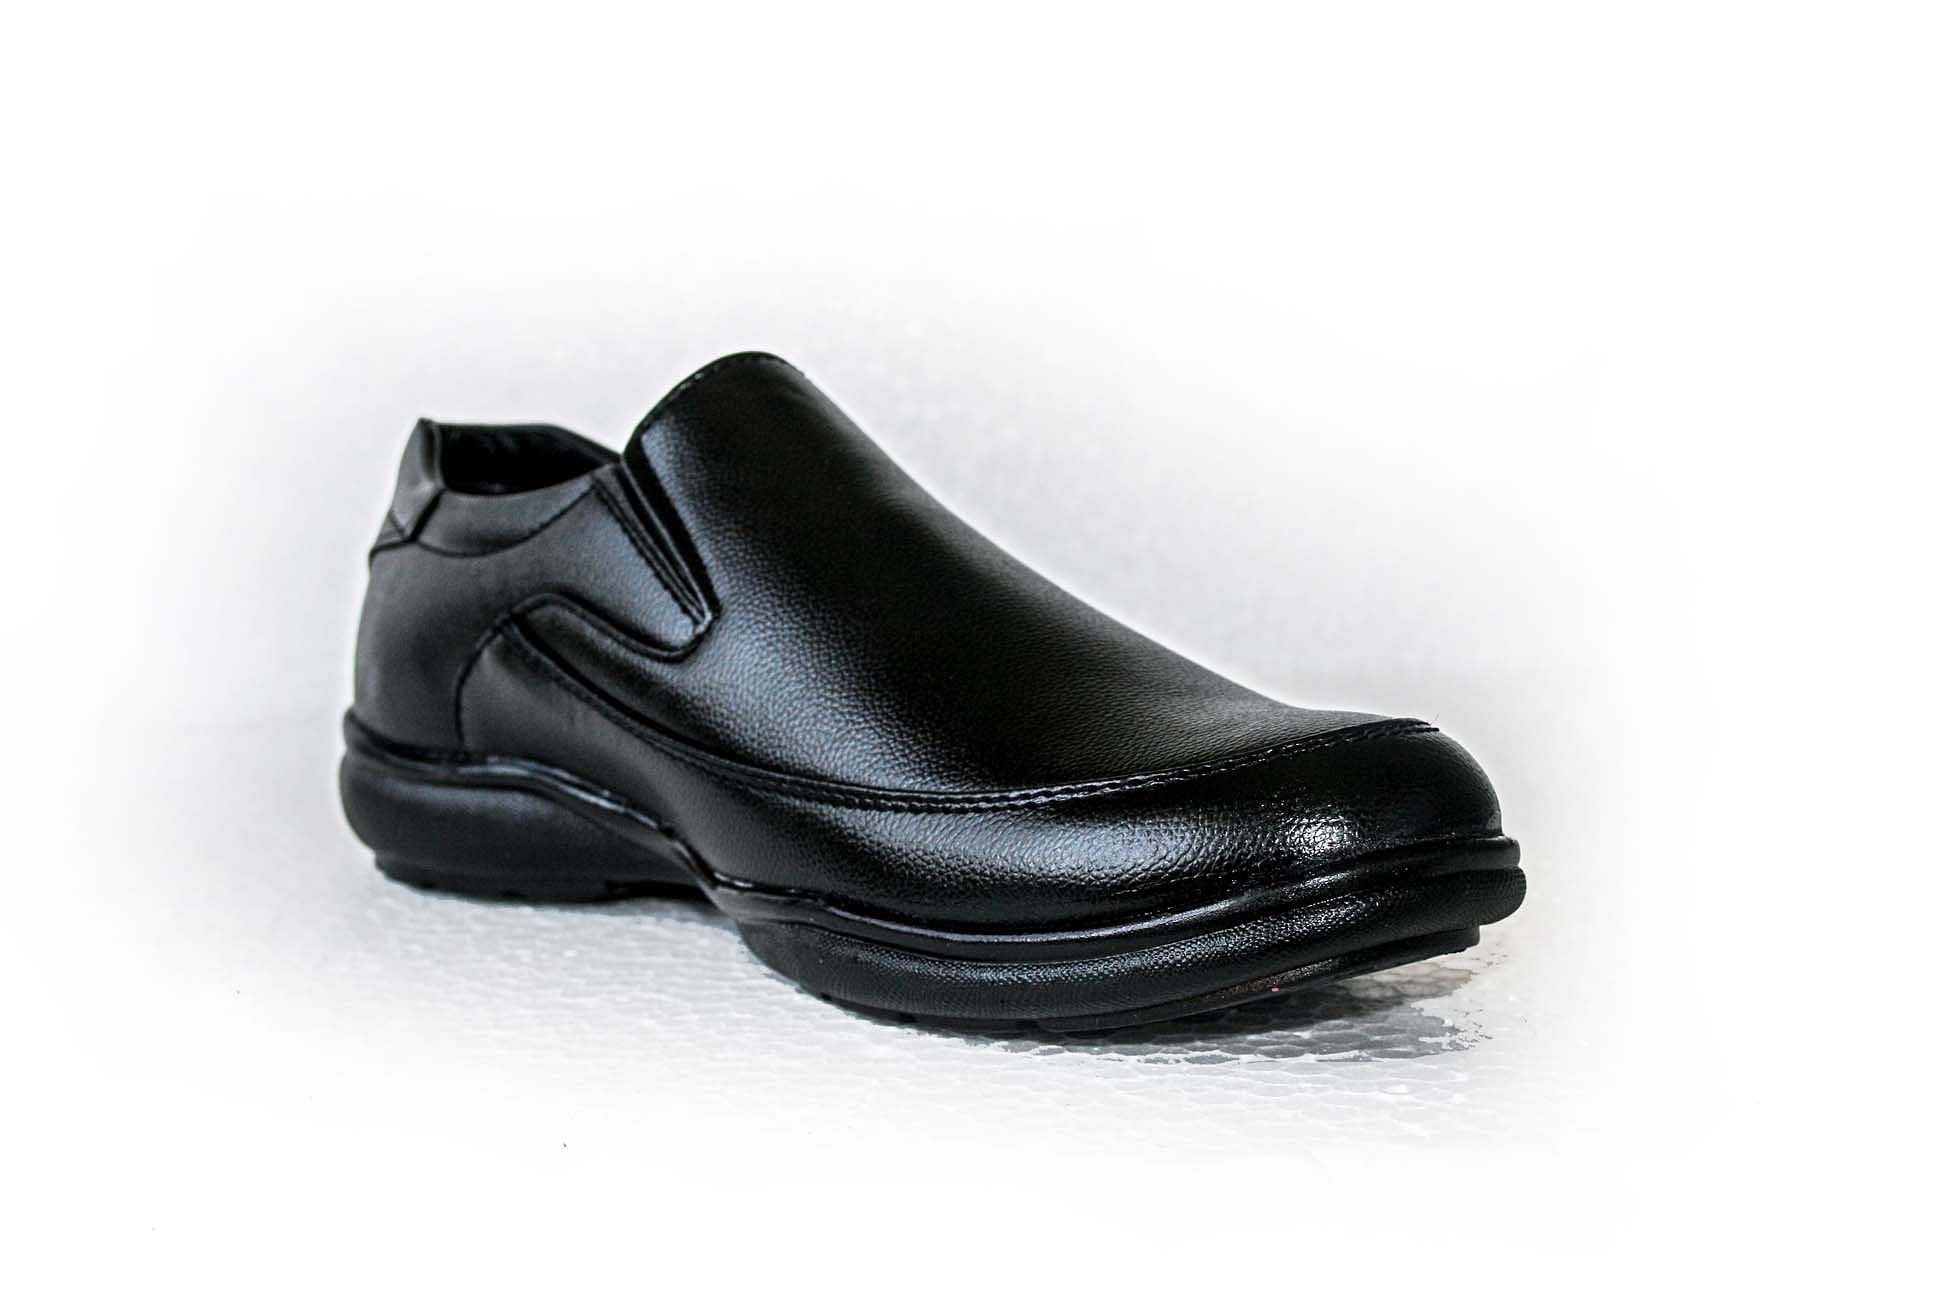 Pair-it Men moccasin Formal Shoes - Black-MN-RYDER207